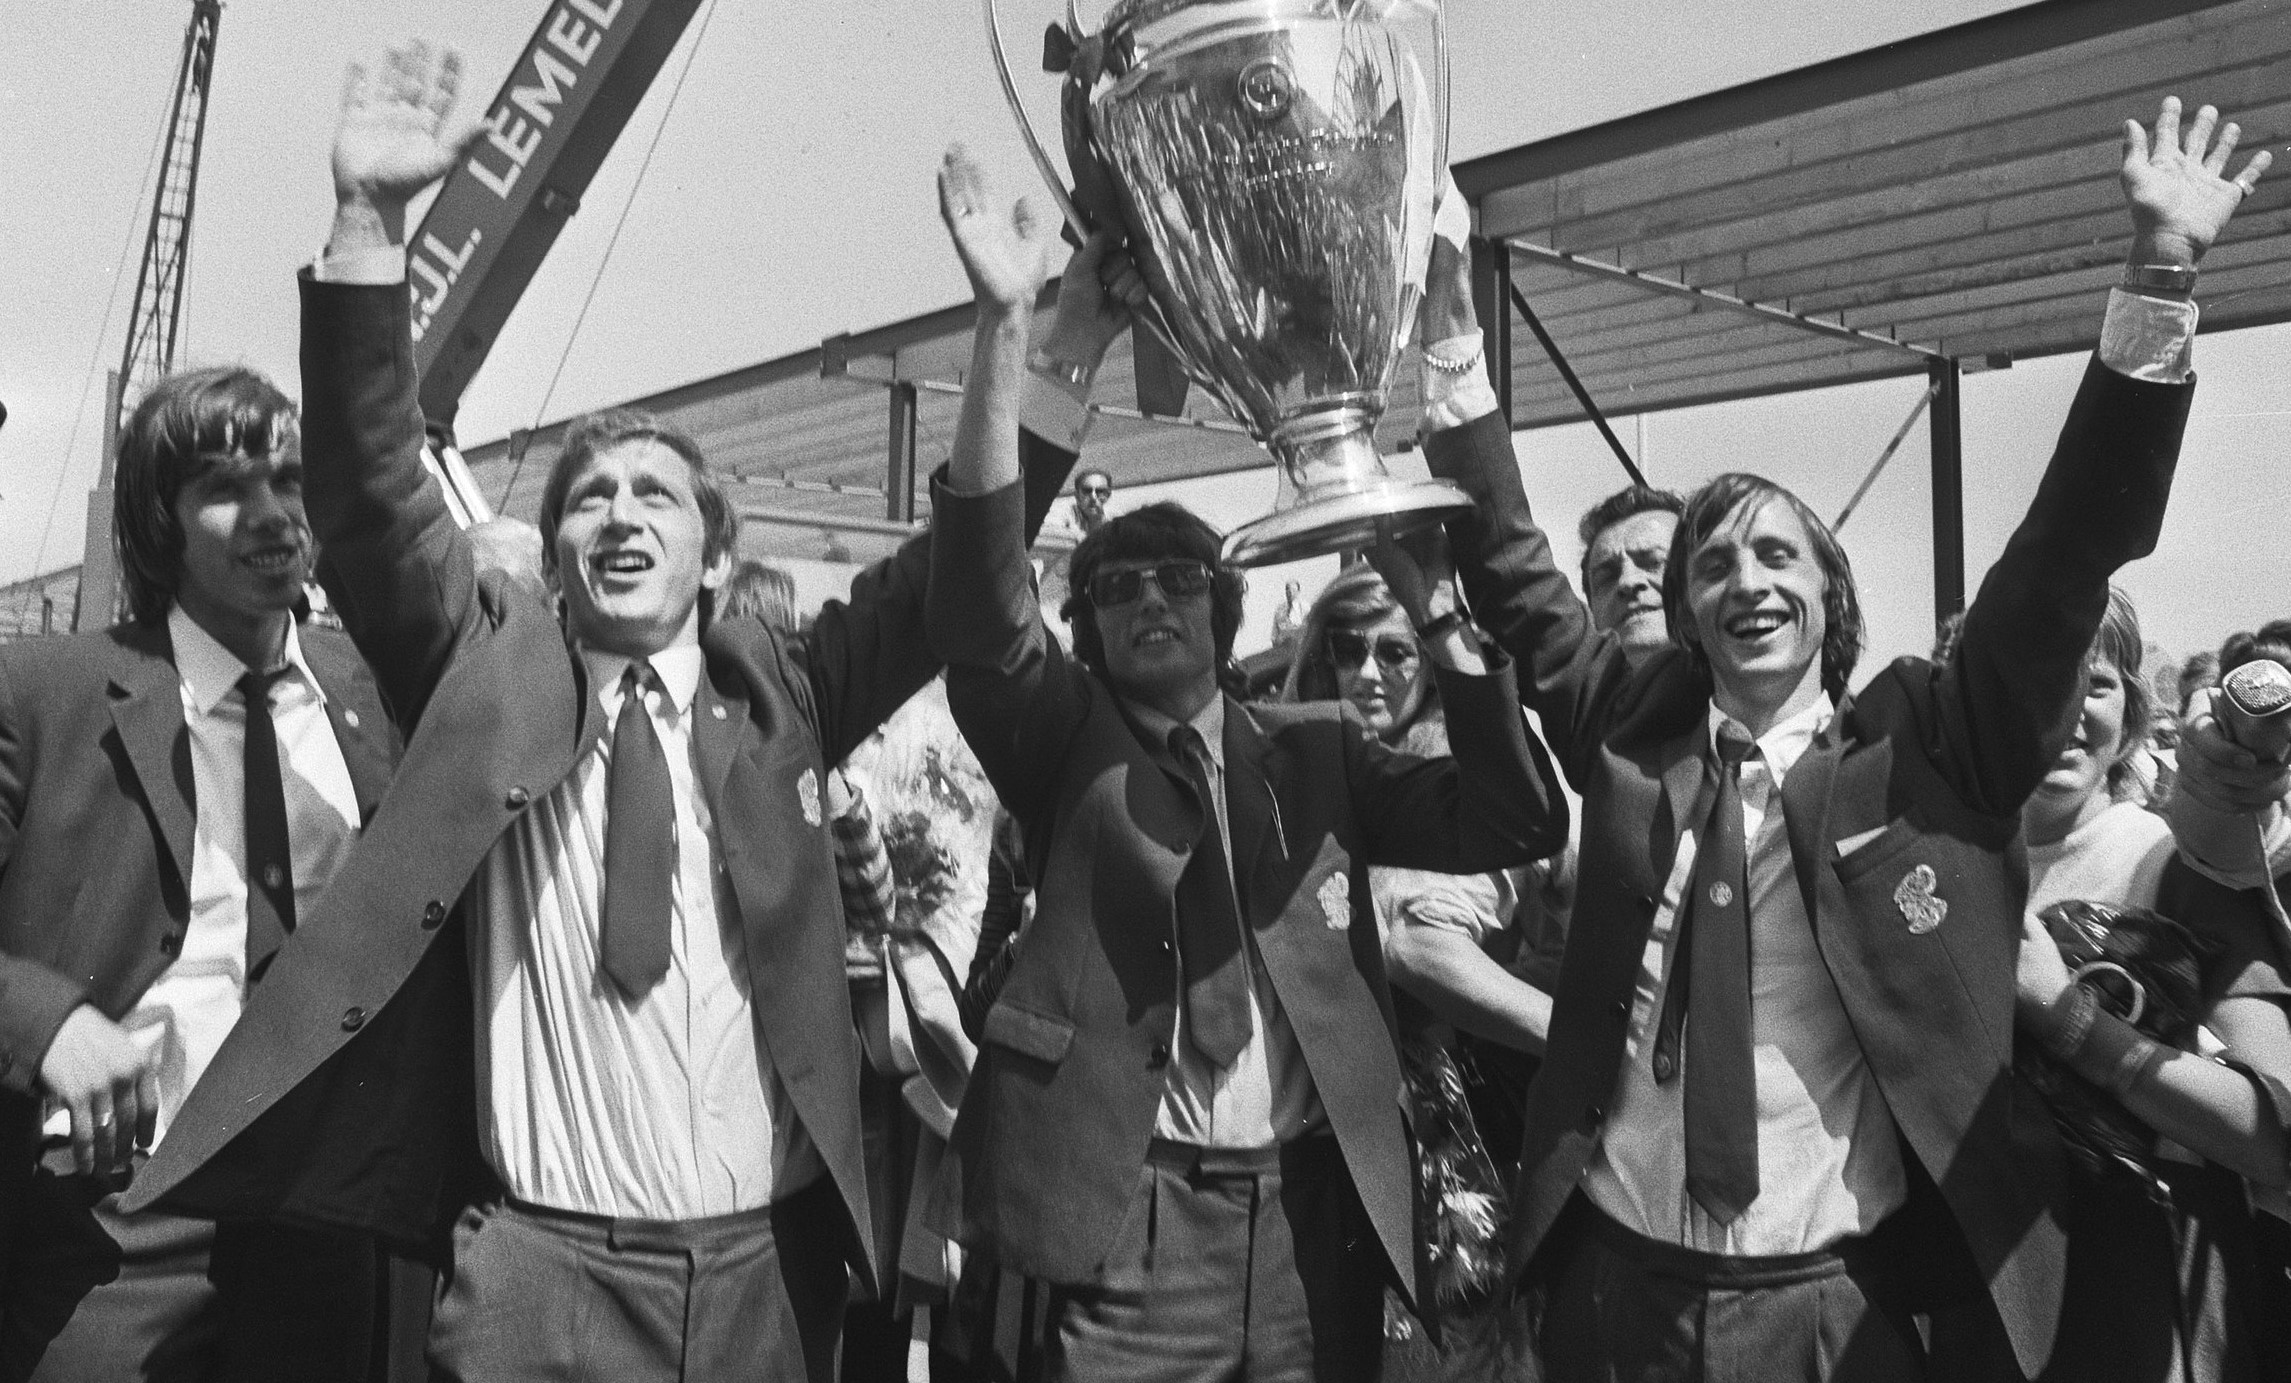 Ajax Amsterdam, winner of the 1970-71 European Cup